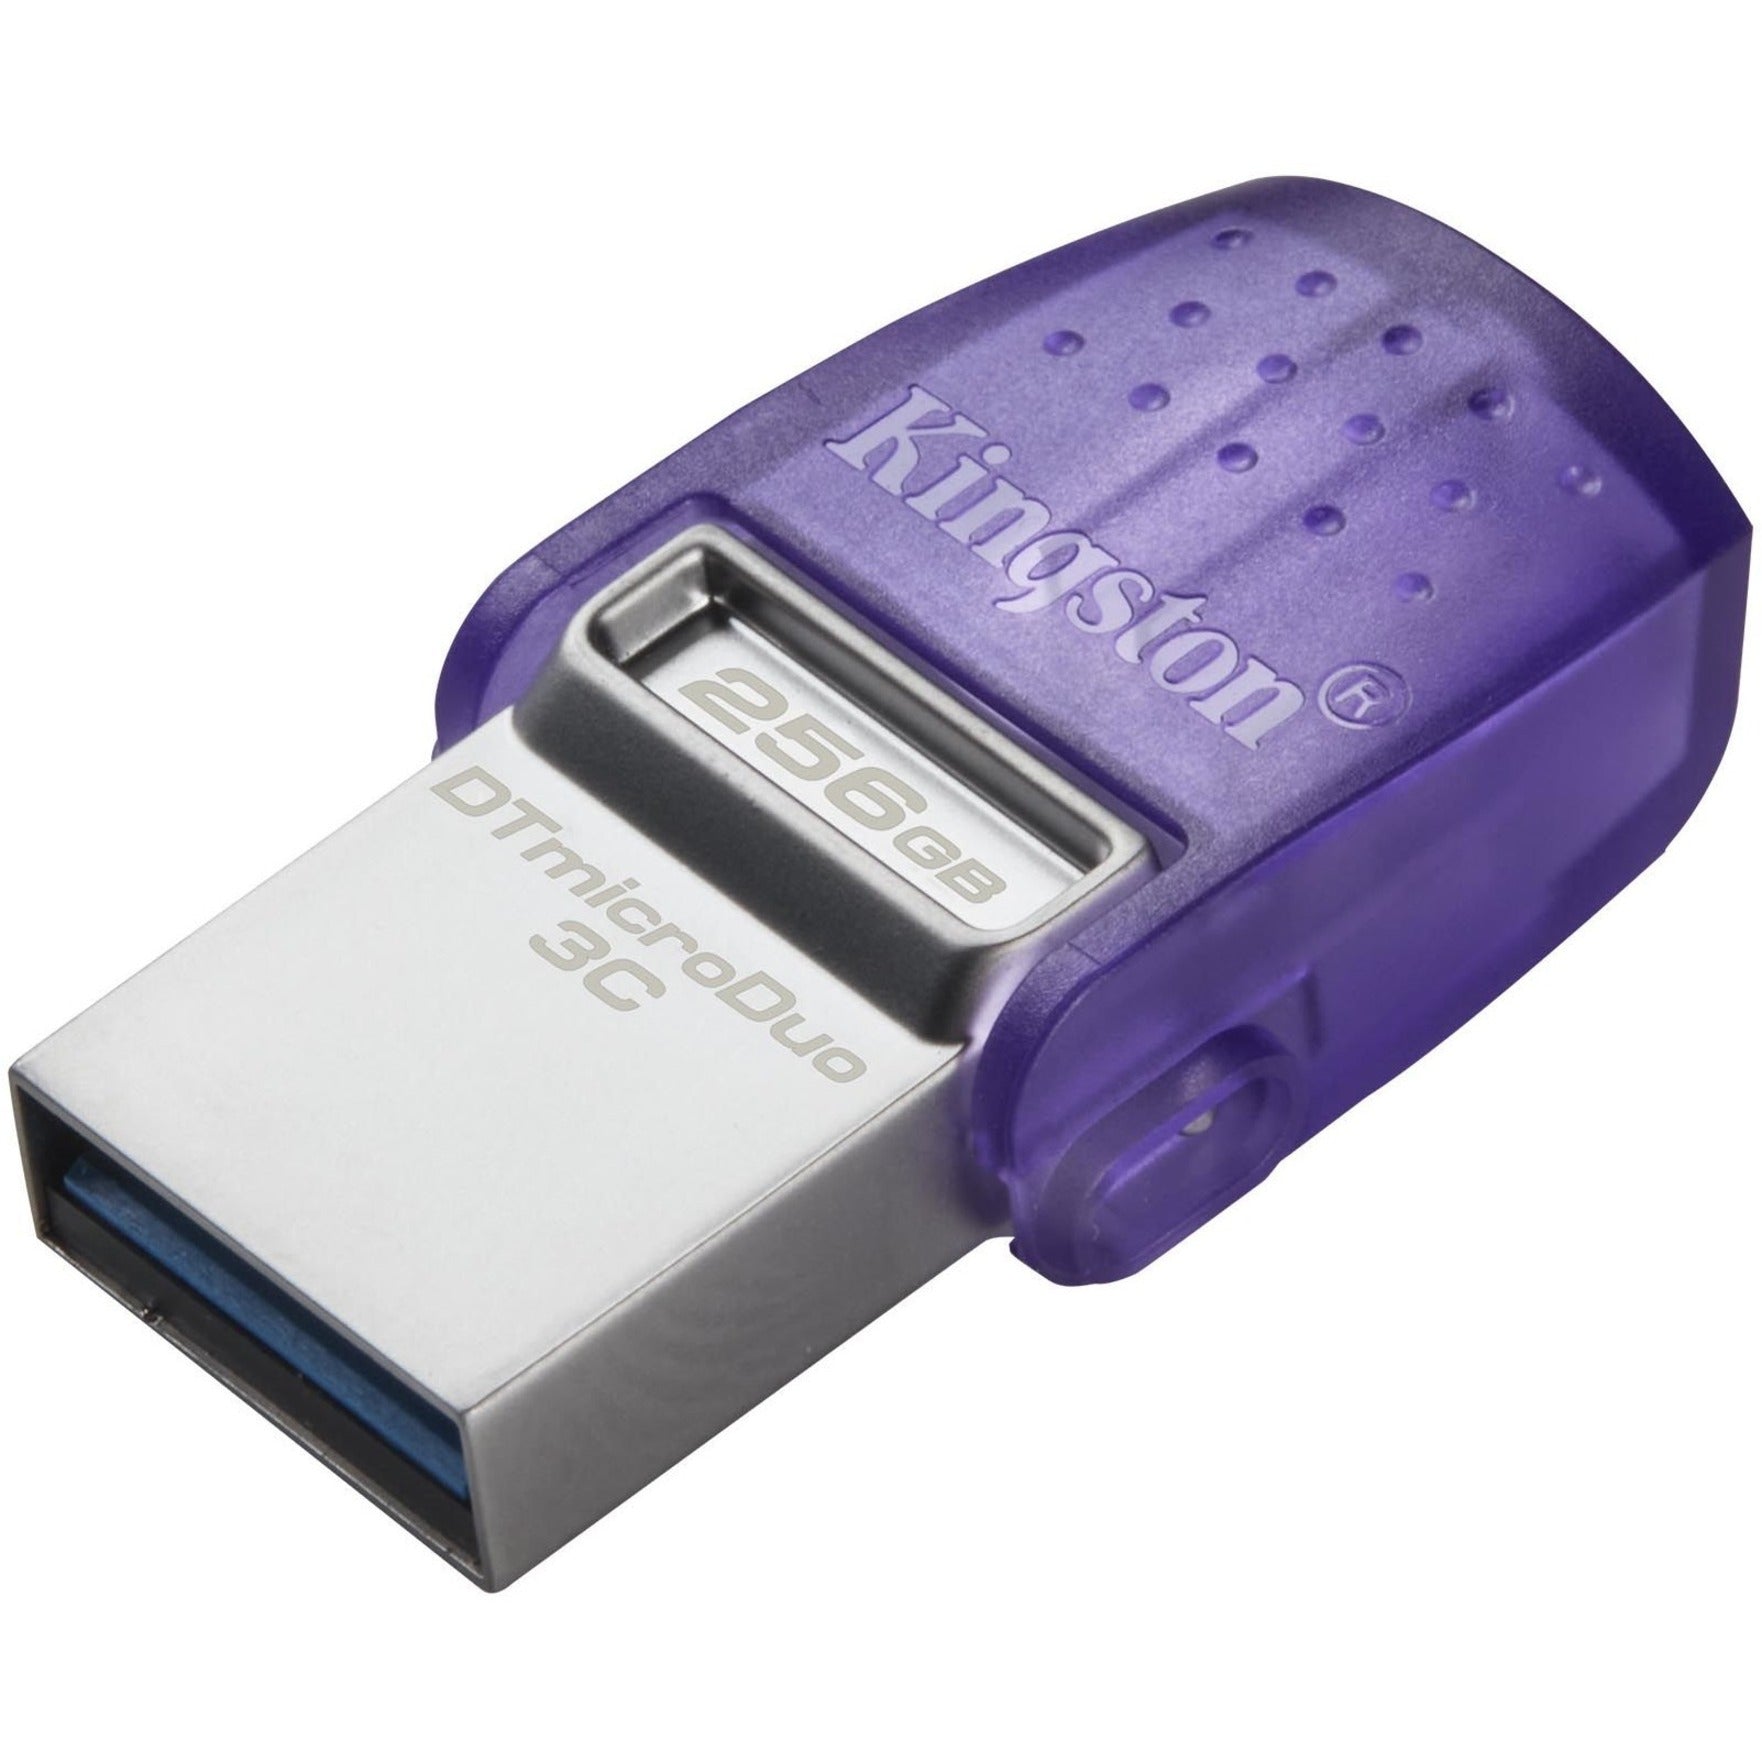 كينغستون DTDUO3CG3/256 جيجابايت محرك فلاش USB DataTraveler microDuo 3C ، تخزين 256 جيجابايت ، بنفسجي